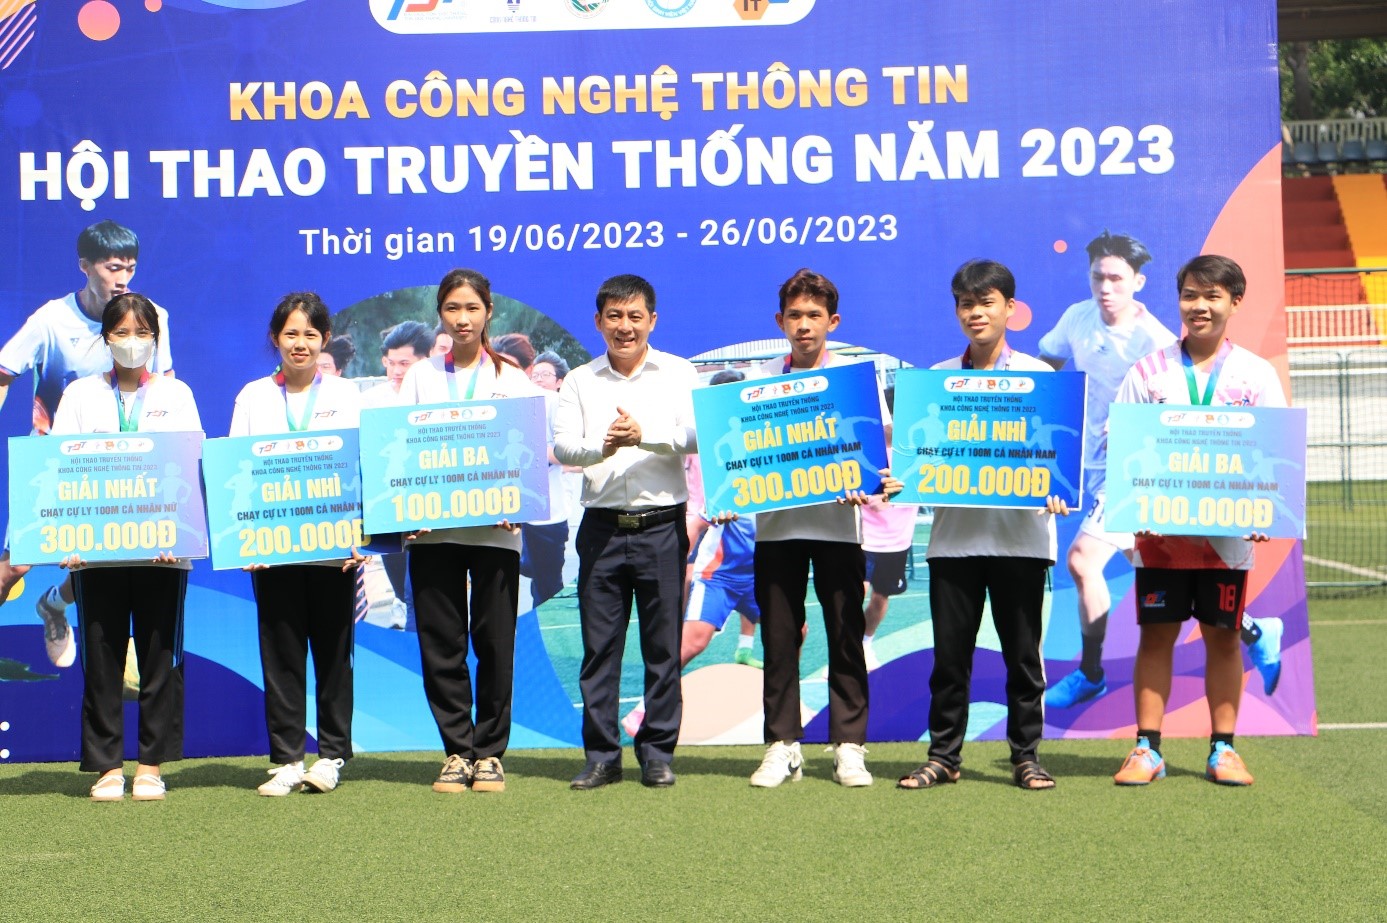 Thầy Trịnh Phi Cường trao giải cho các cá nhân xuất sắc bộ môn chạy cự ly 100m